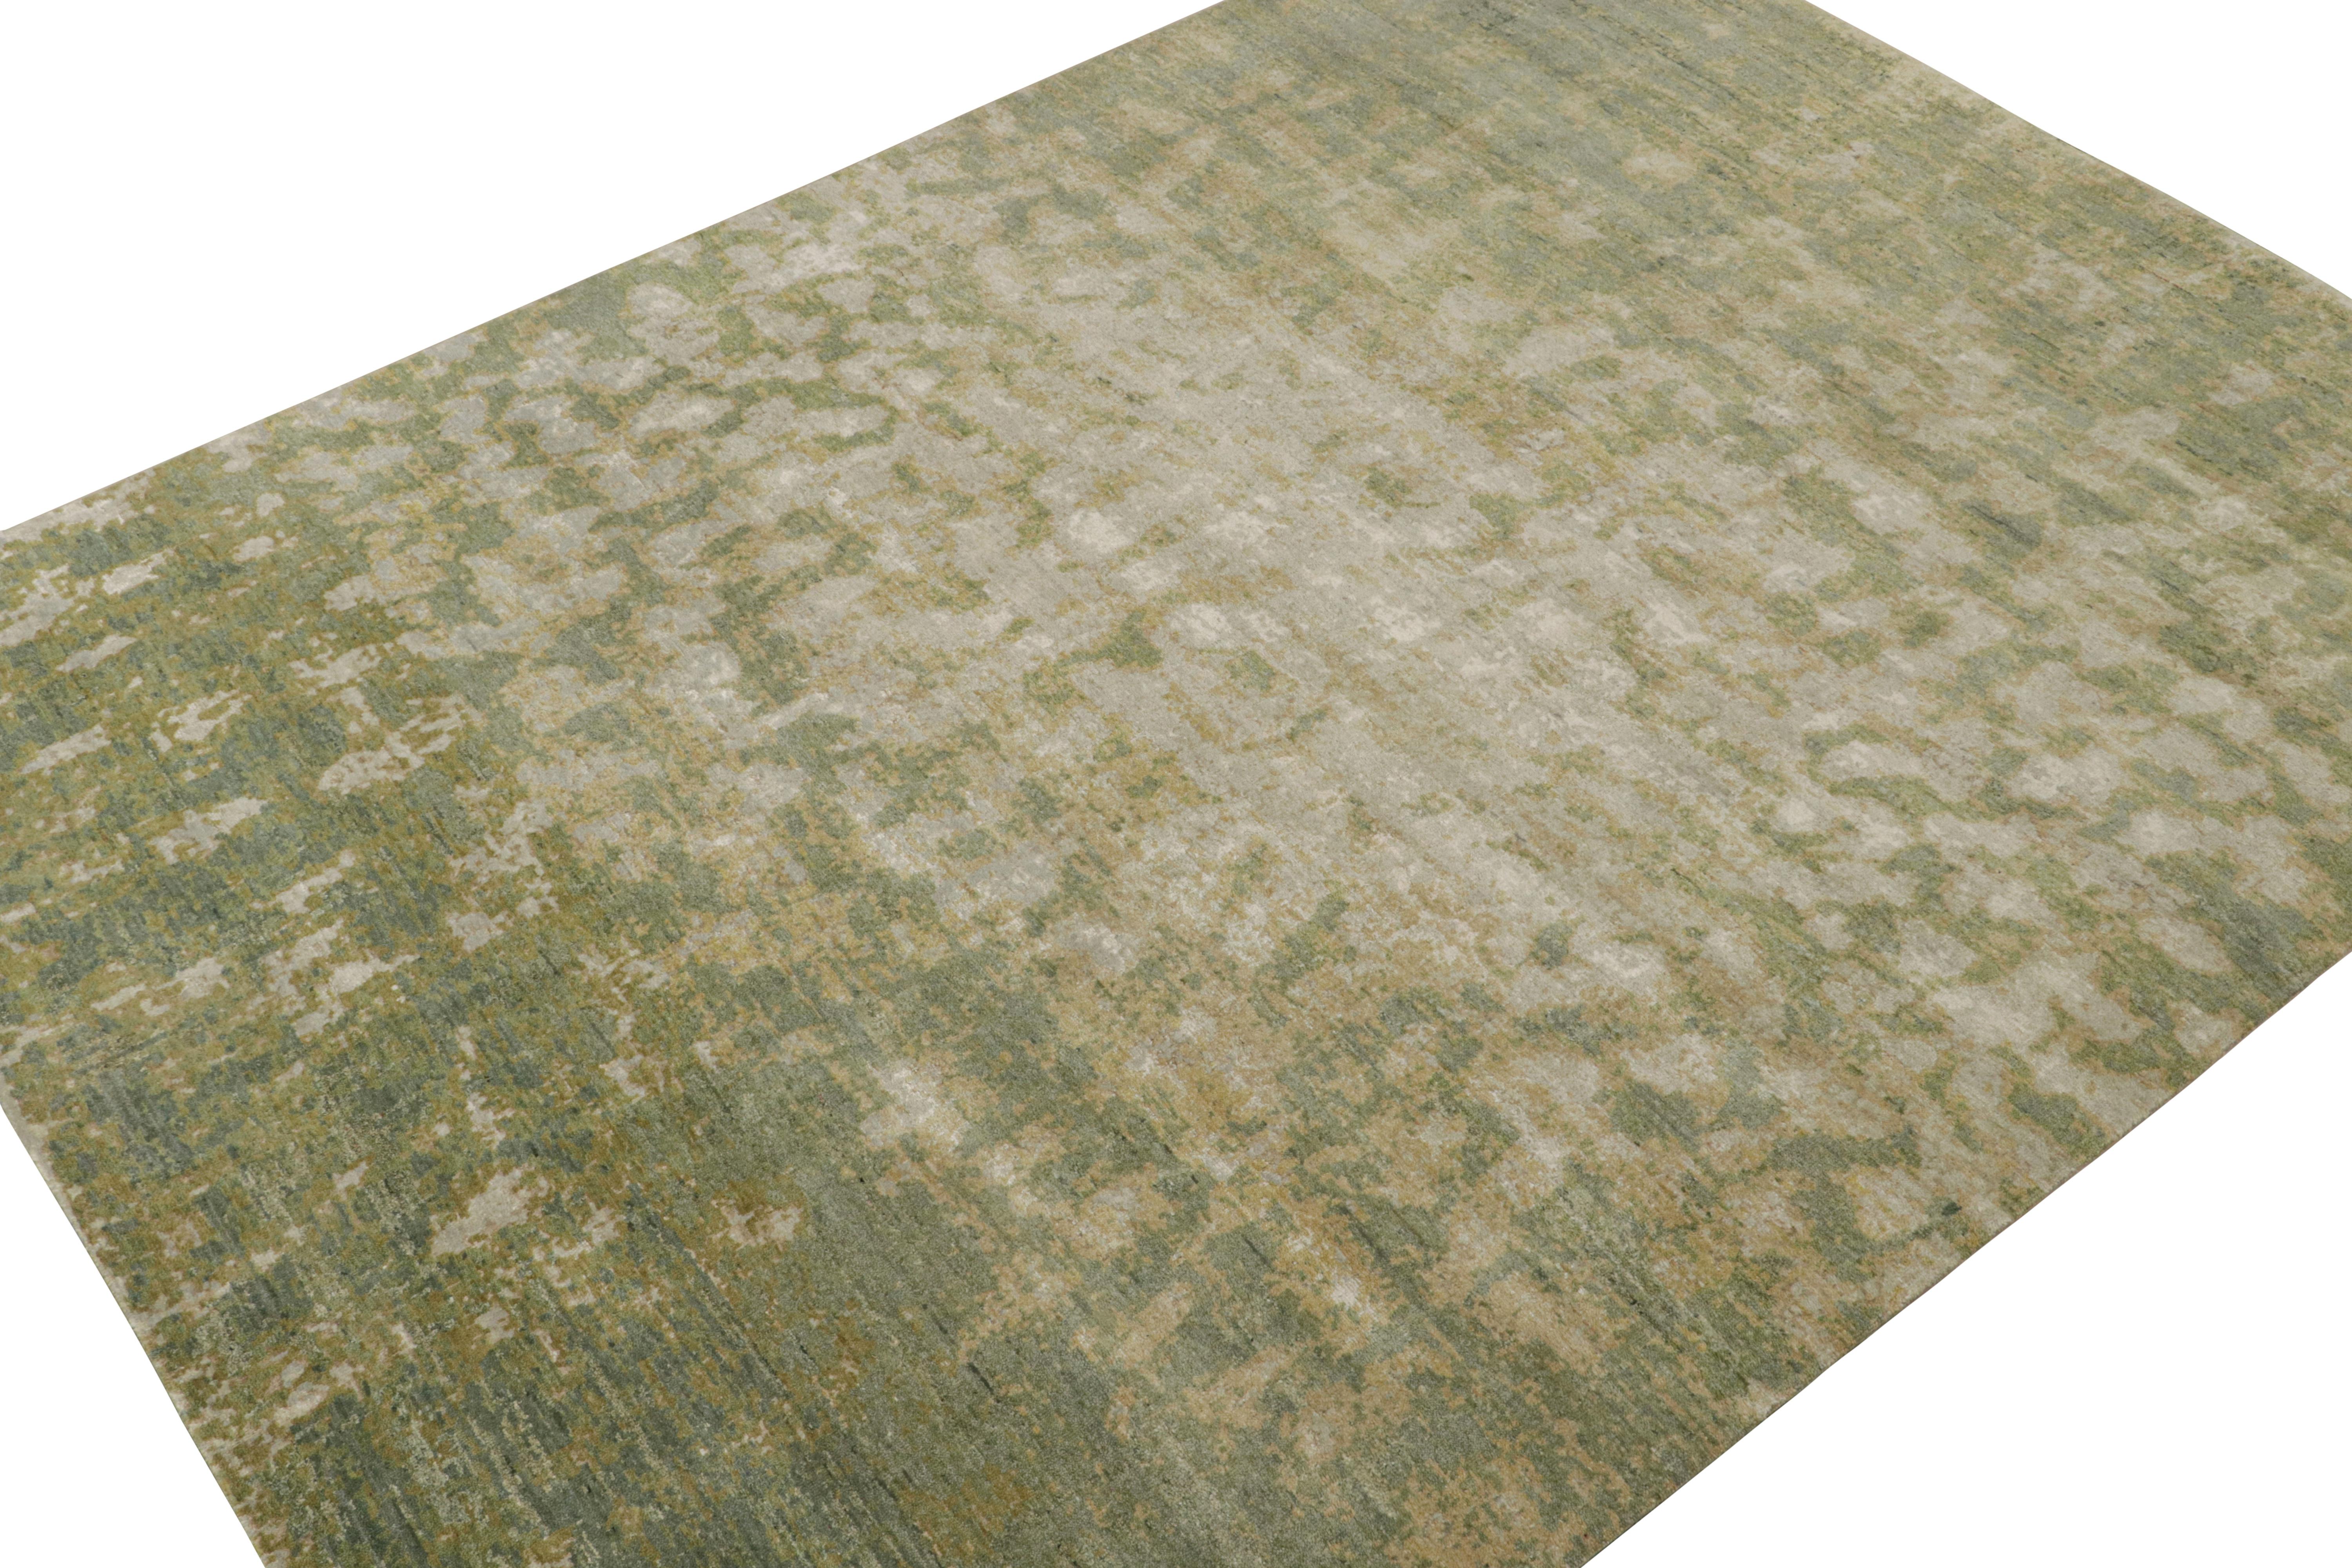 Noué à la main en laine, soie et coton, un tapis abstrait 9x12 de la collection Modern de Rug & Kilim.

Sur le Design : 

Ce tapis présente un motif ressemblant à des aquarelles vertes, dorées et grises, avec quelques touches de chartreuse. Les